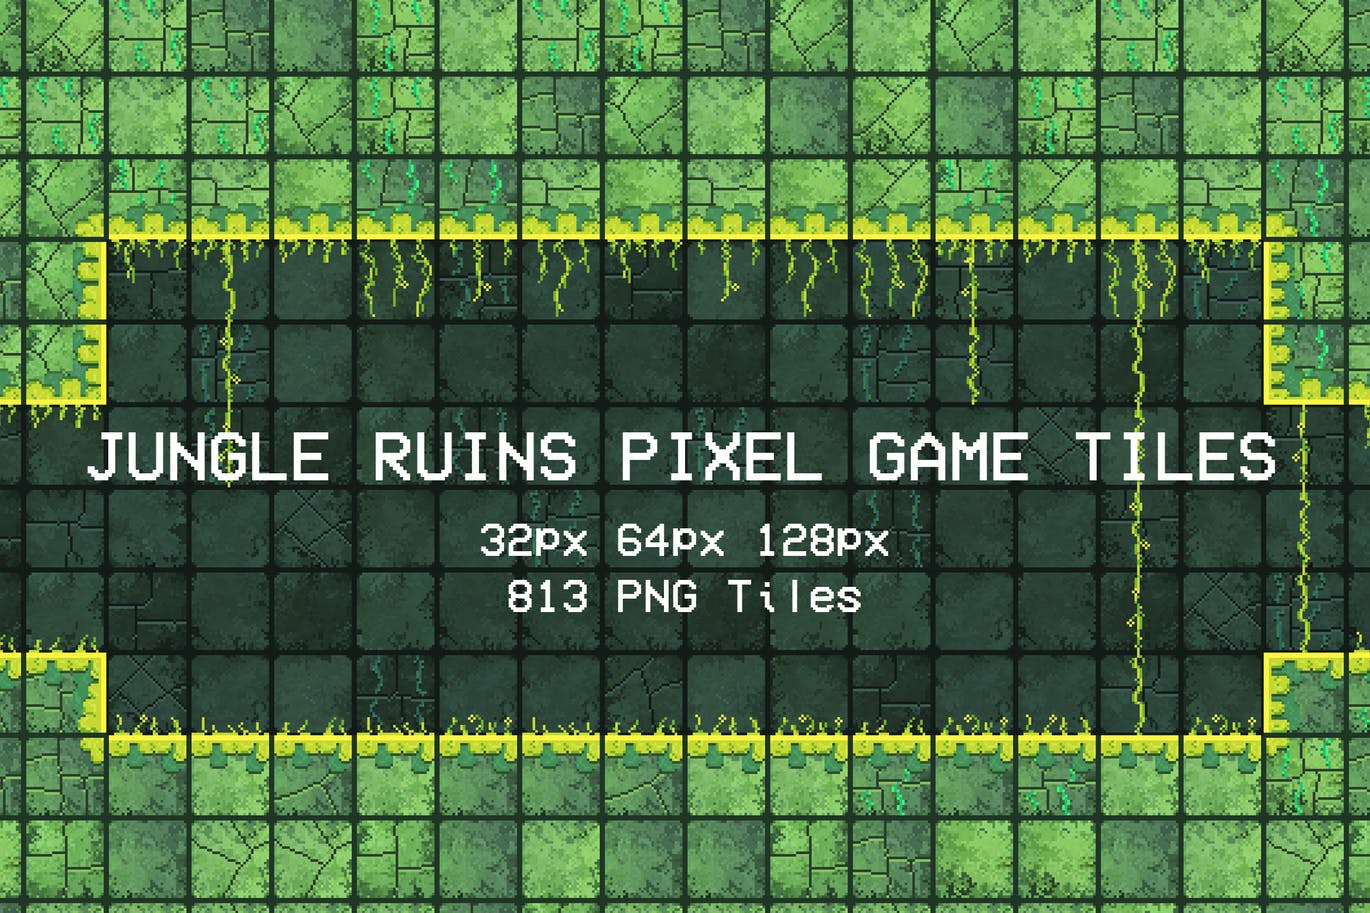 丛林废墟像素游戏瓷砖方块图案 Jungle Ruins Pixel Game Tiles 图片素材 第1张